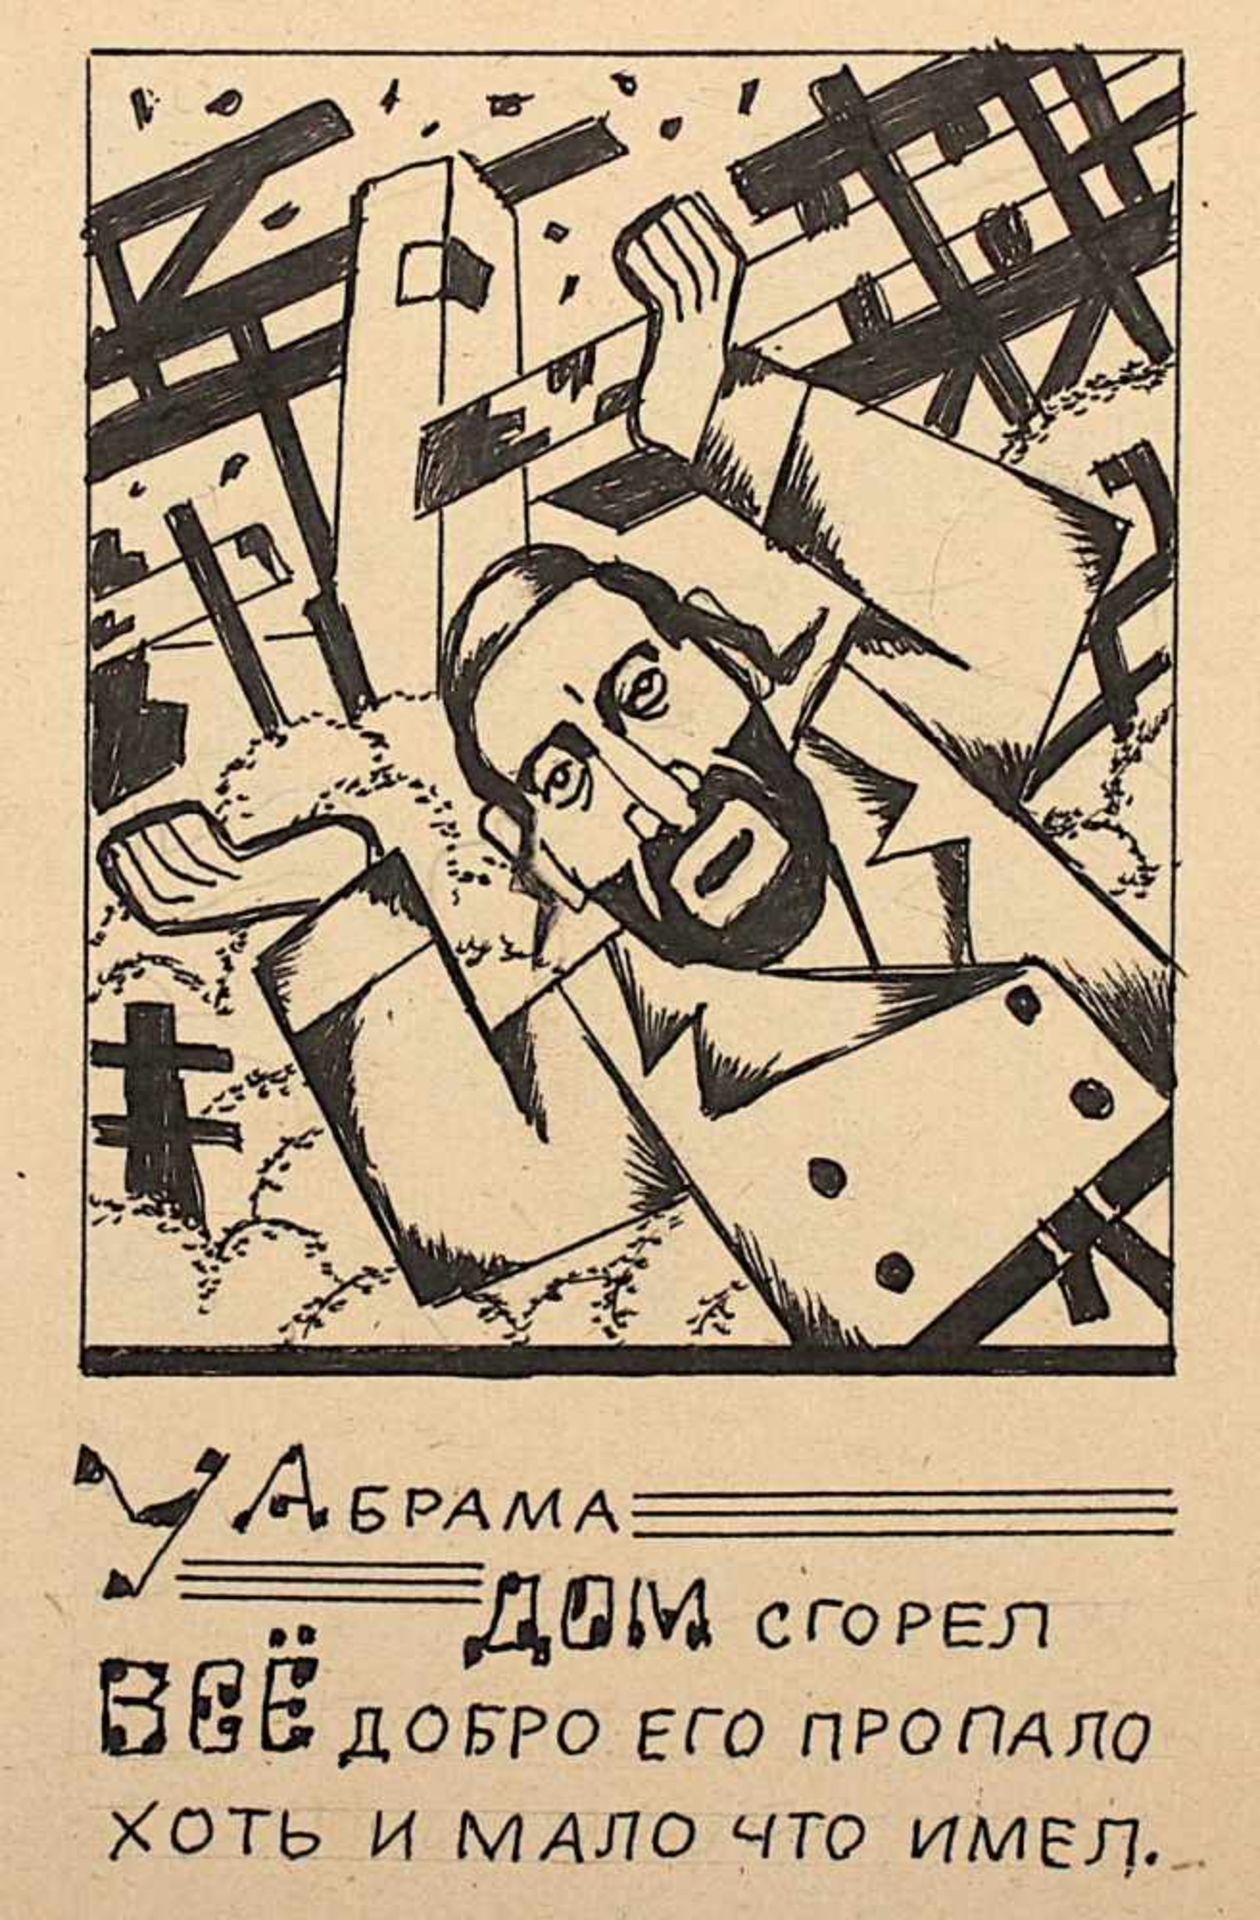 PARATOV, B. (jüdisch-russischer Künstler um 1920/30), Skizzenbuch mit diversen Zeichnungen, wohl ein